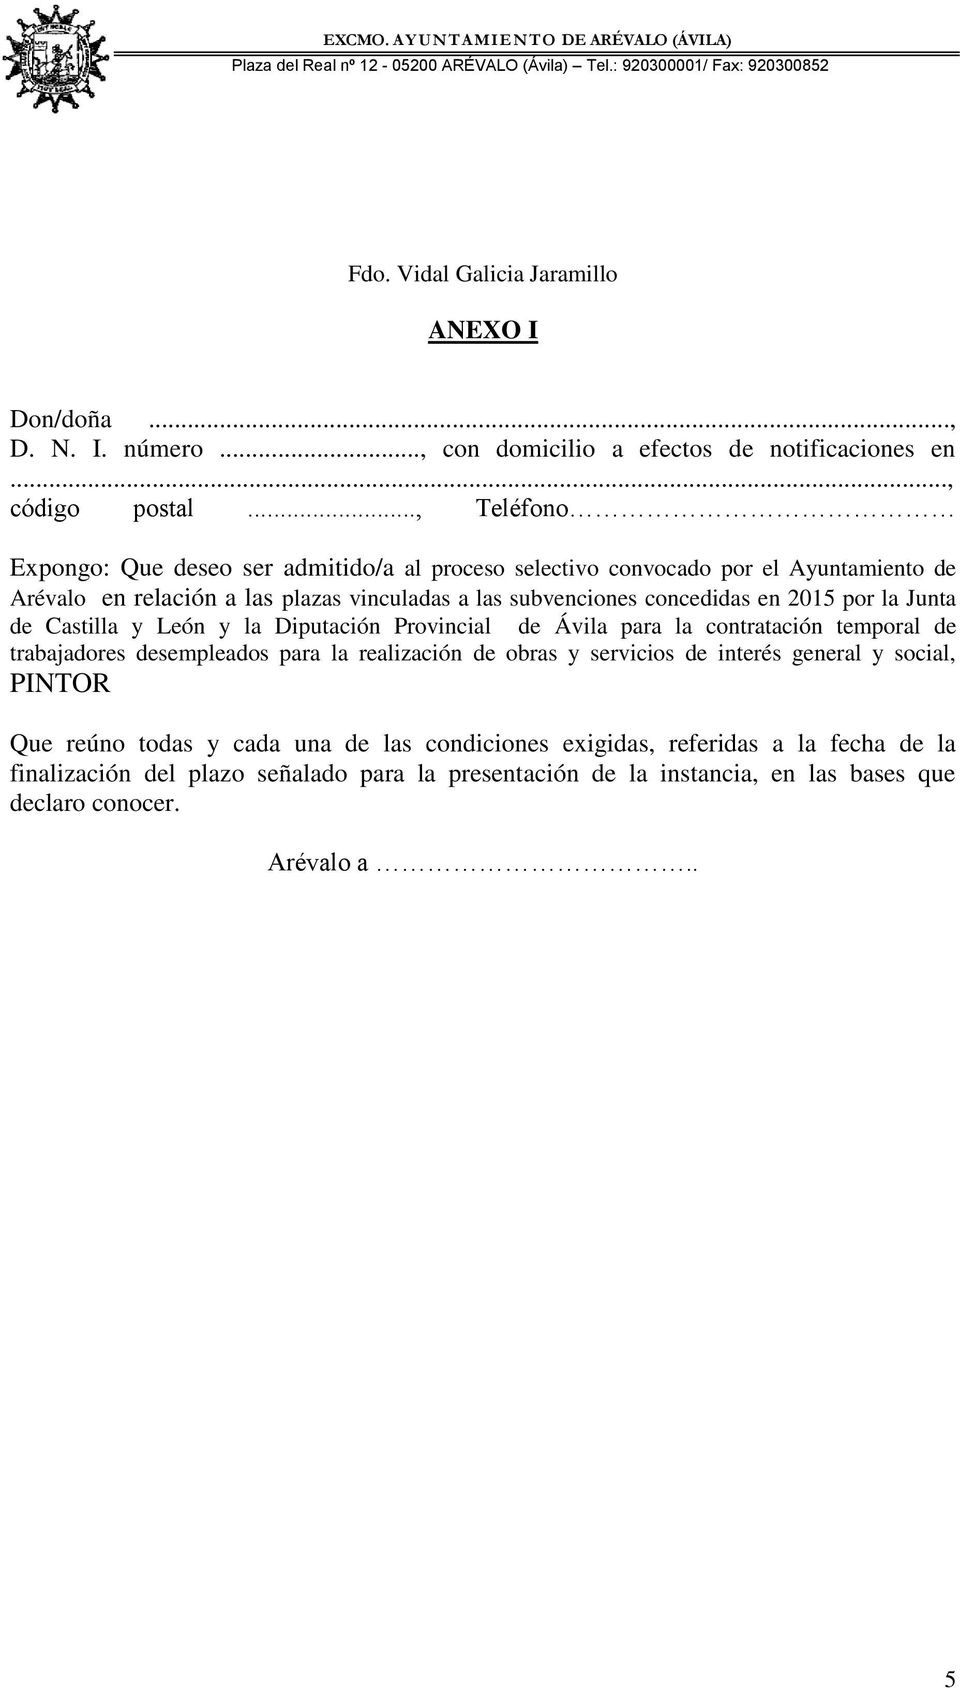 2015 por la Junta de Castilla y León y la Diputación Provincial de Ávila para la contratación temporal de trabajadores desempleados para la realización de obras y servicios de